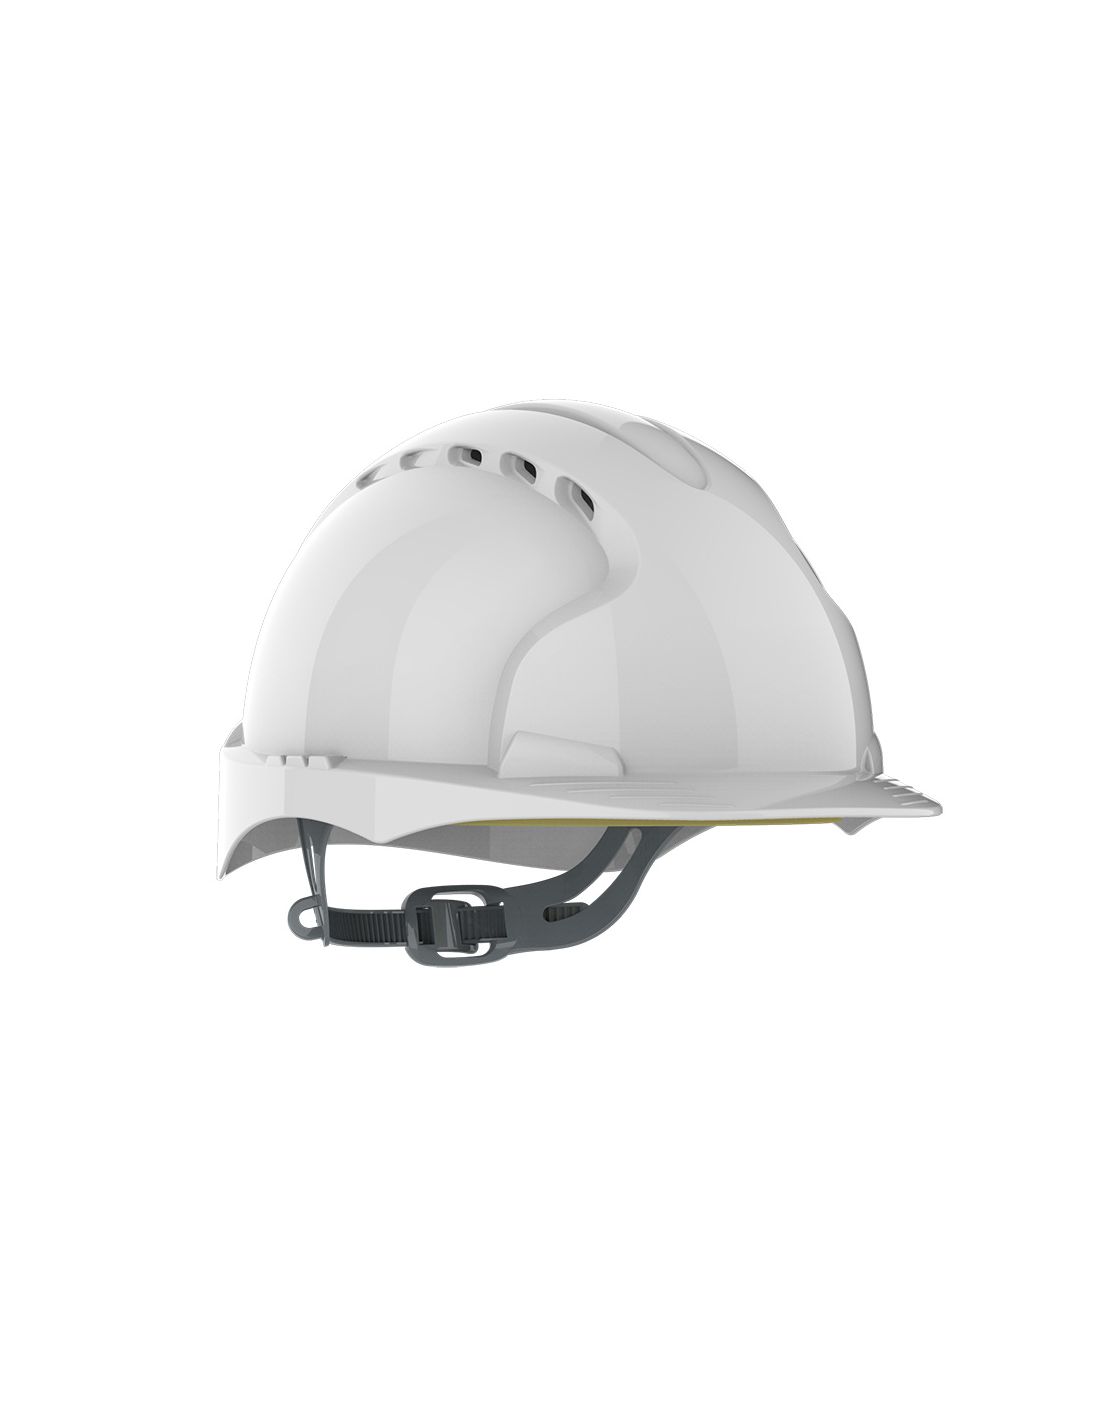 visuel Casque EVO®2 ventilé - glissière - blanc JSP Safety vue 3/4 profil coté droit